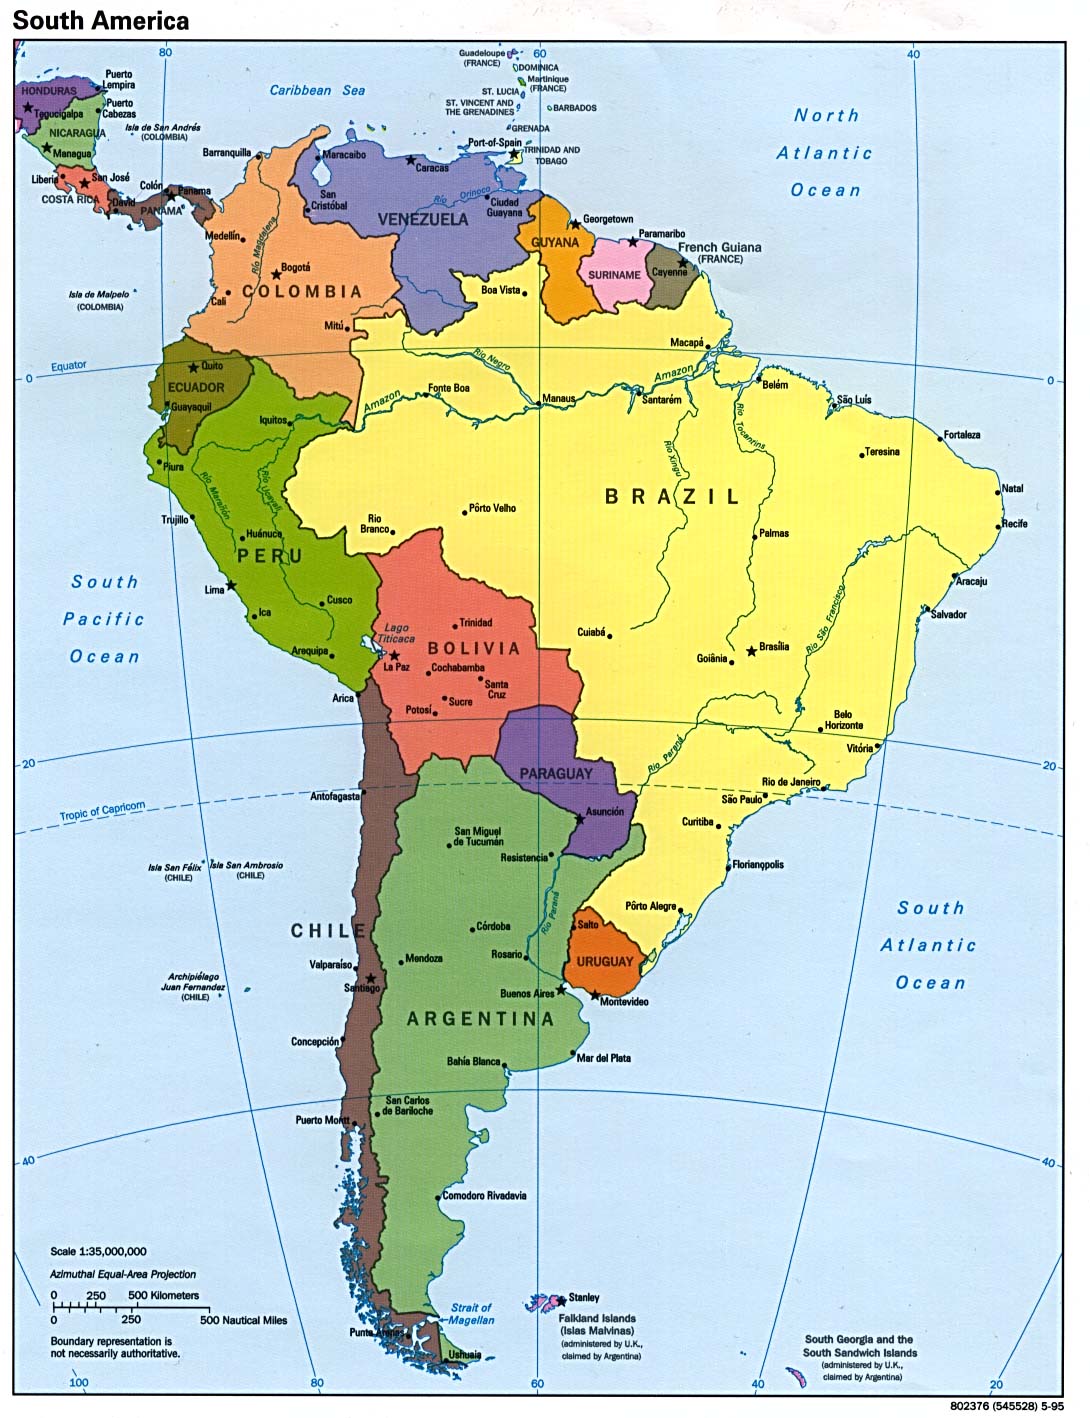 Mappa Politica dell'America del Sud: mappa politica ad alta